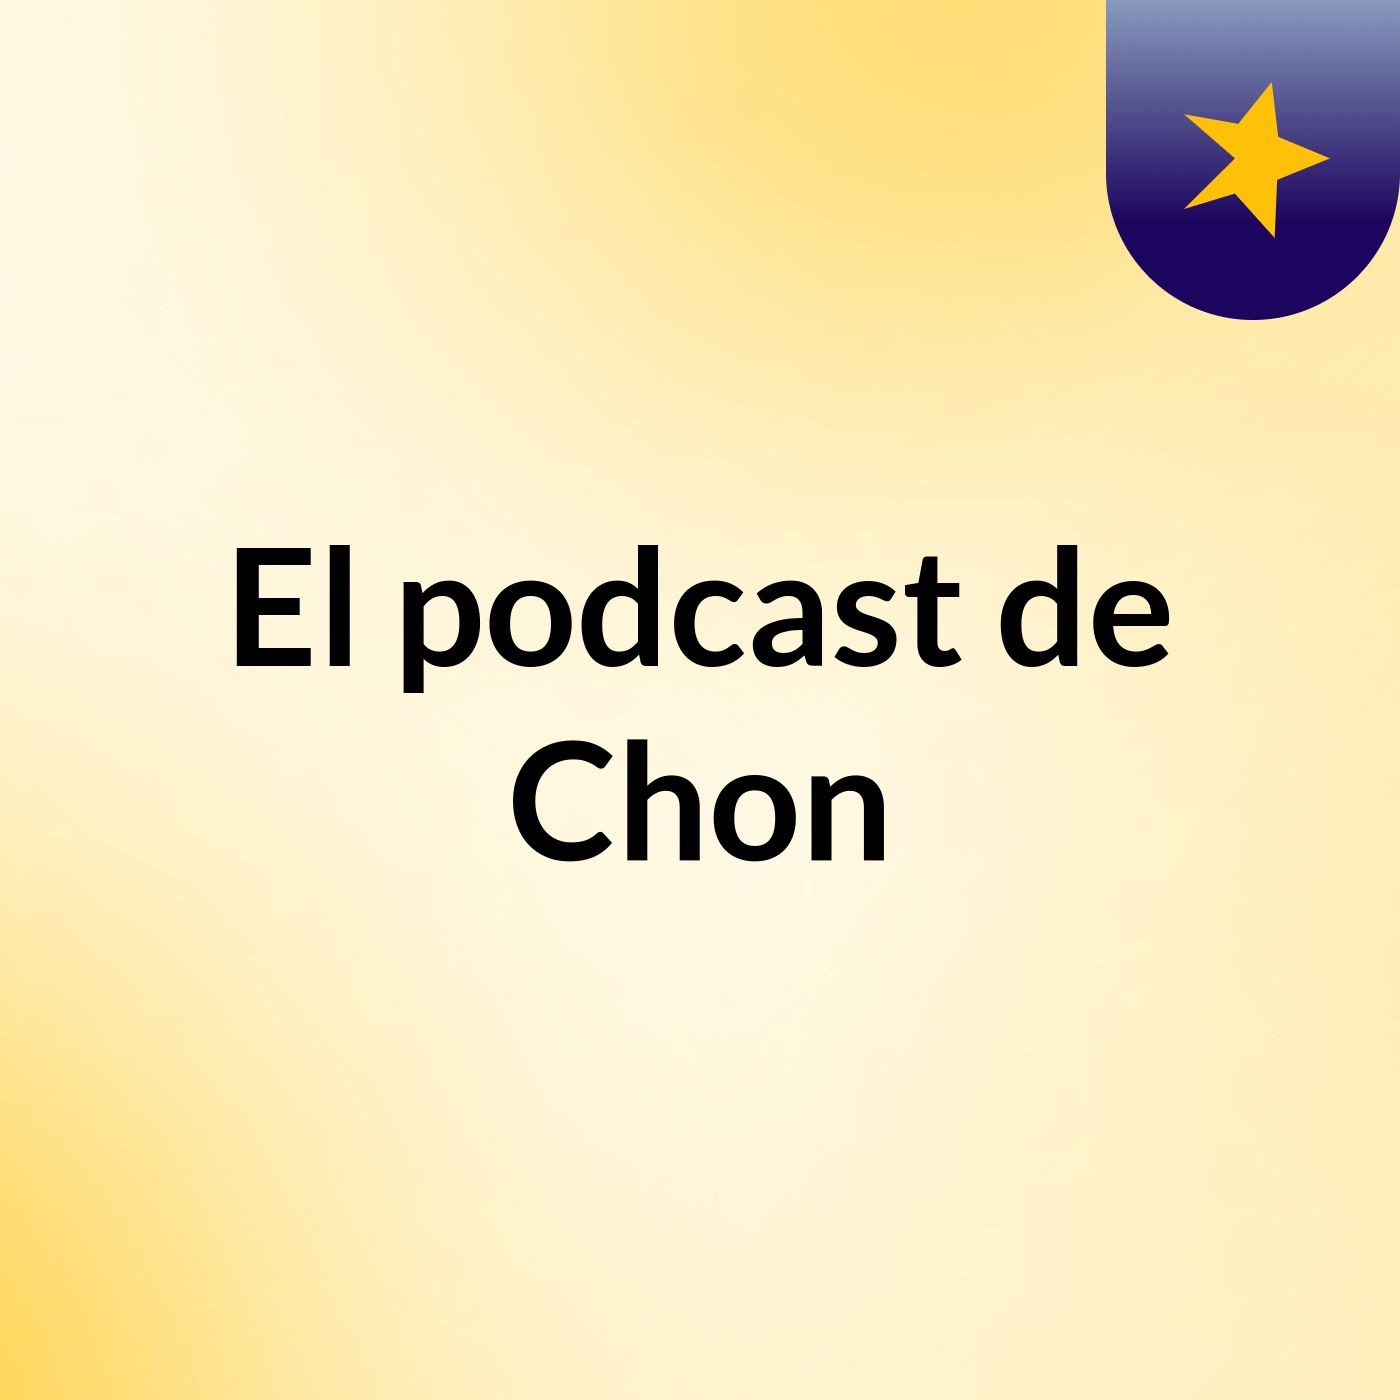 El podcast de Chon